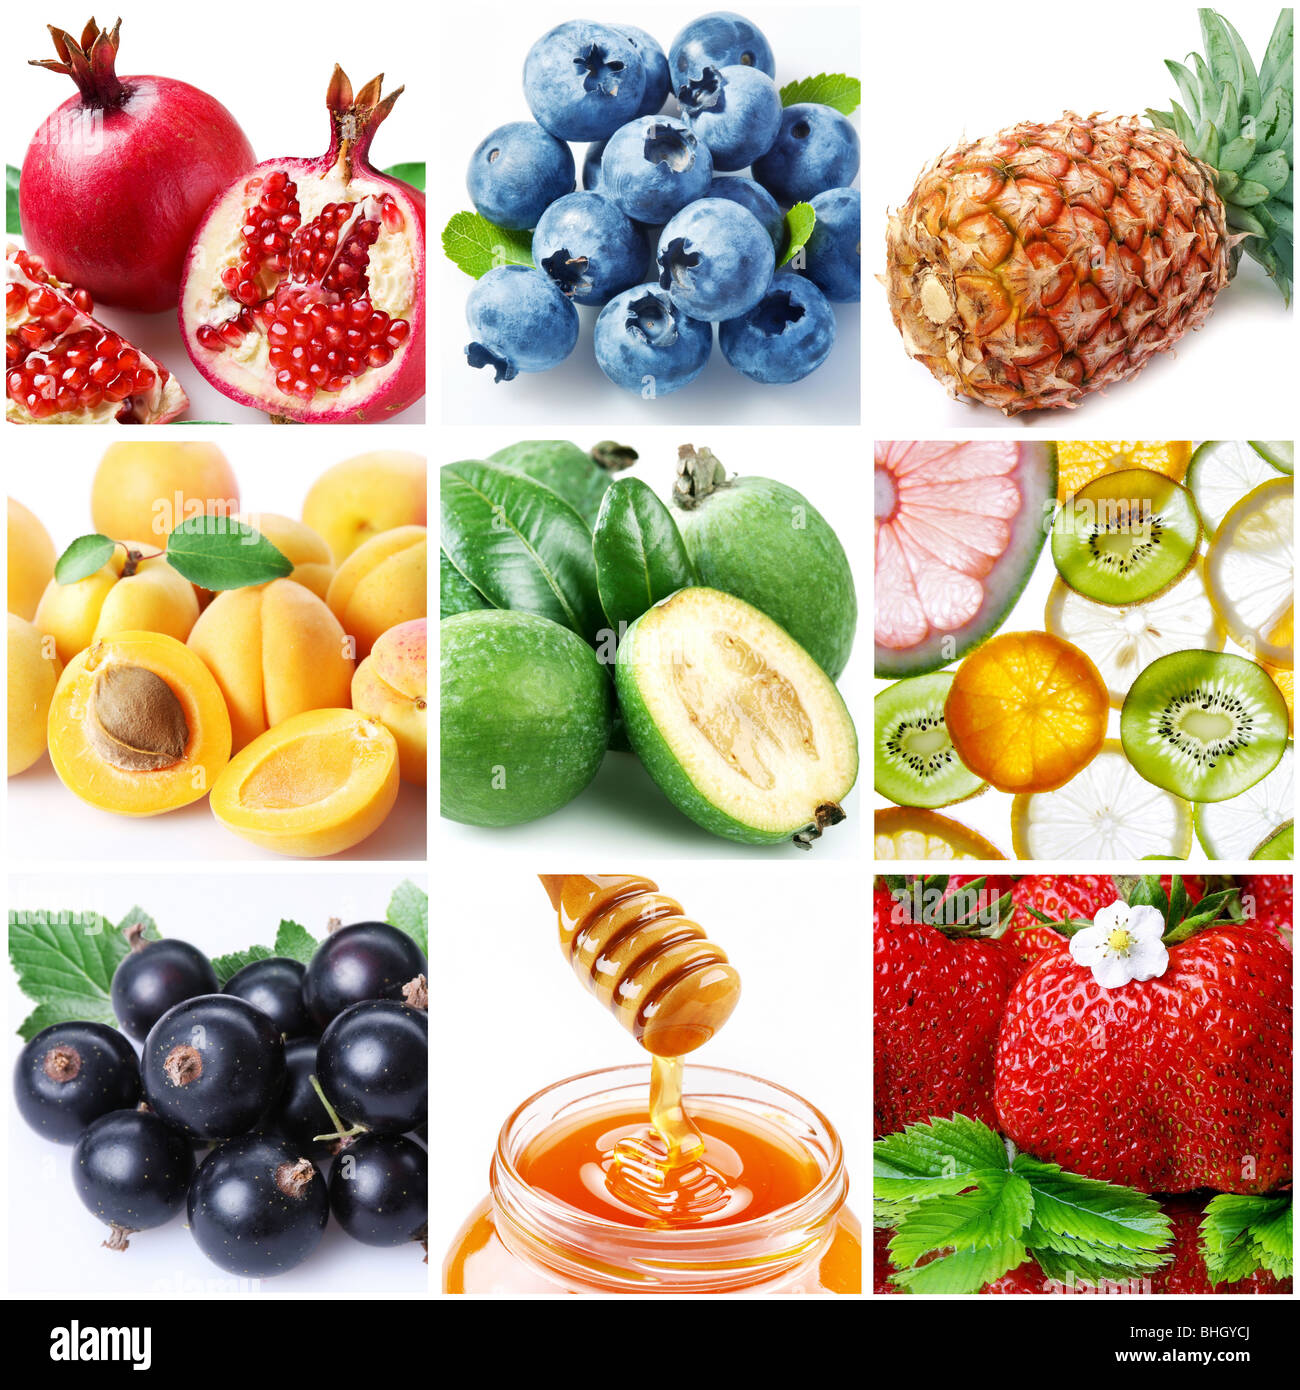 Colección de imágenes sobre el tema de los "frutos" Foto de stock